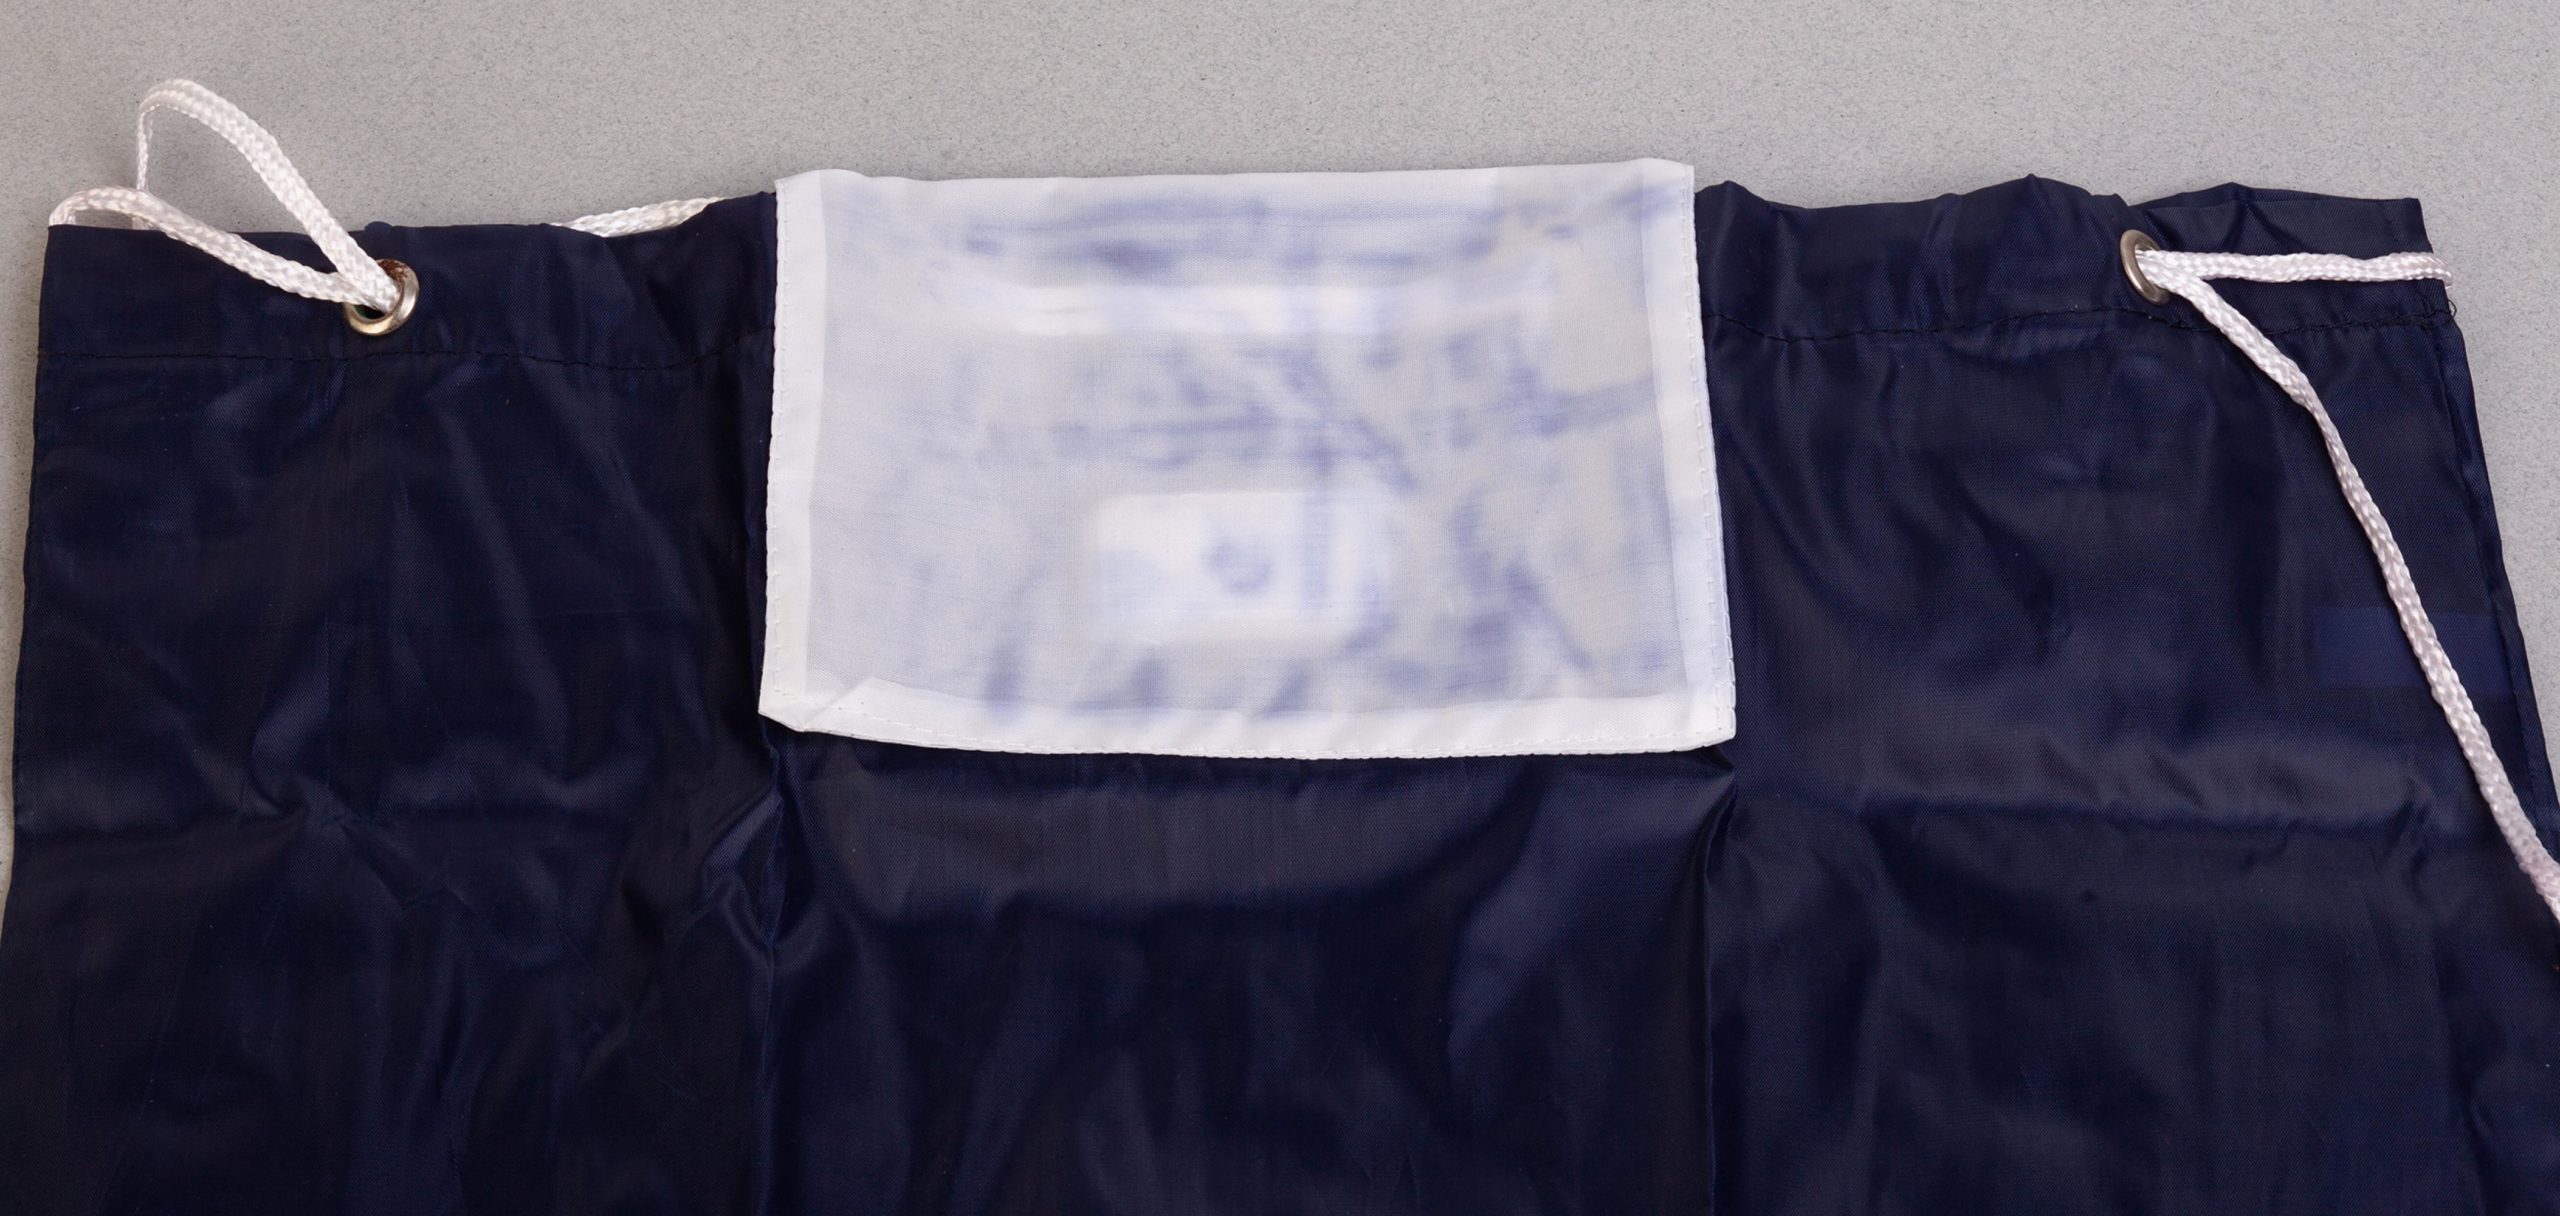 Рюкзак "Winner", цвет белый с синим, фото 4